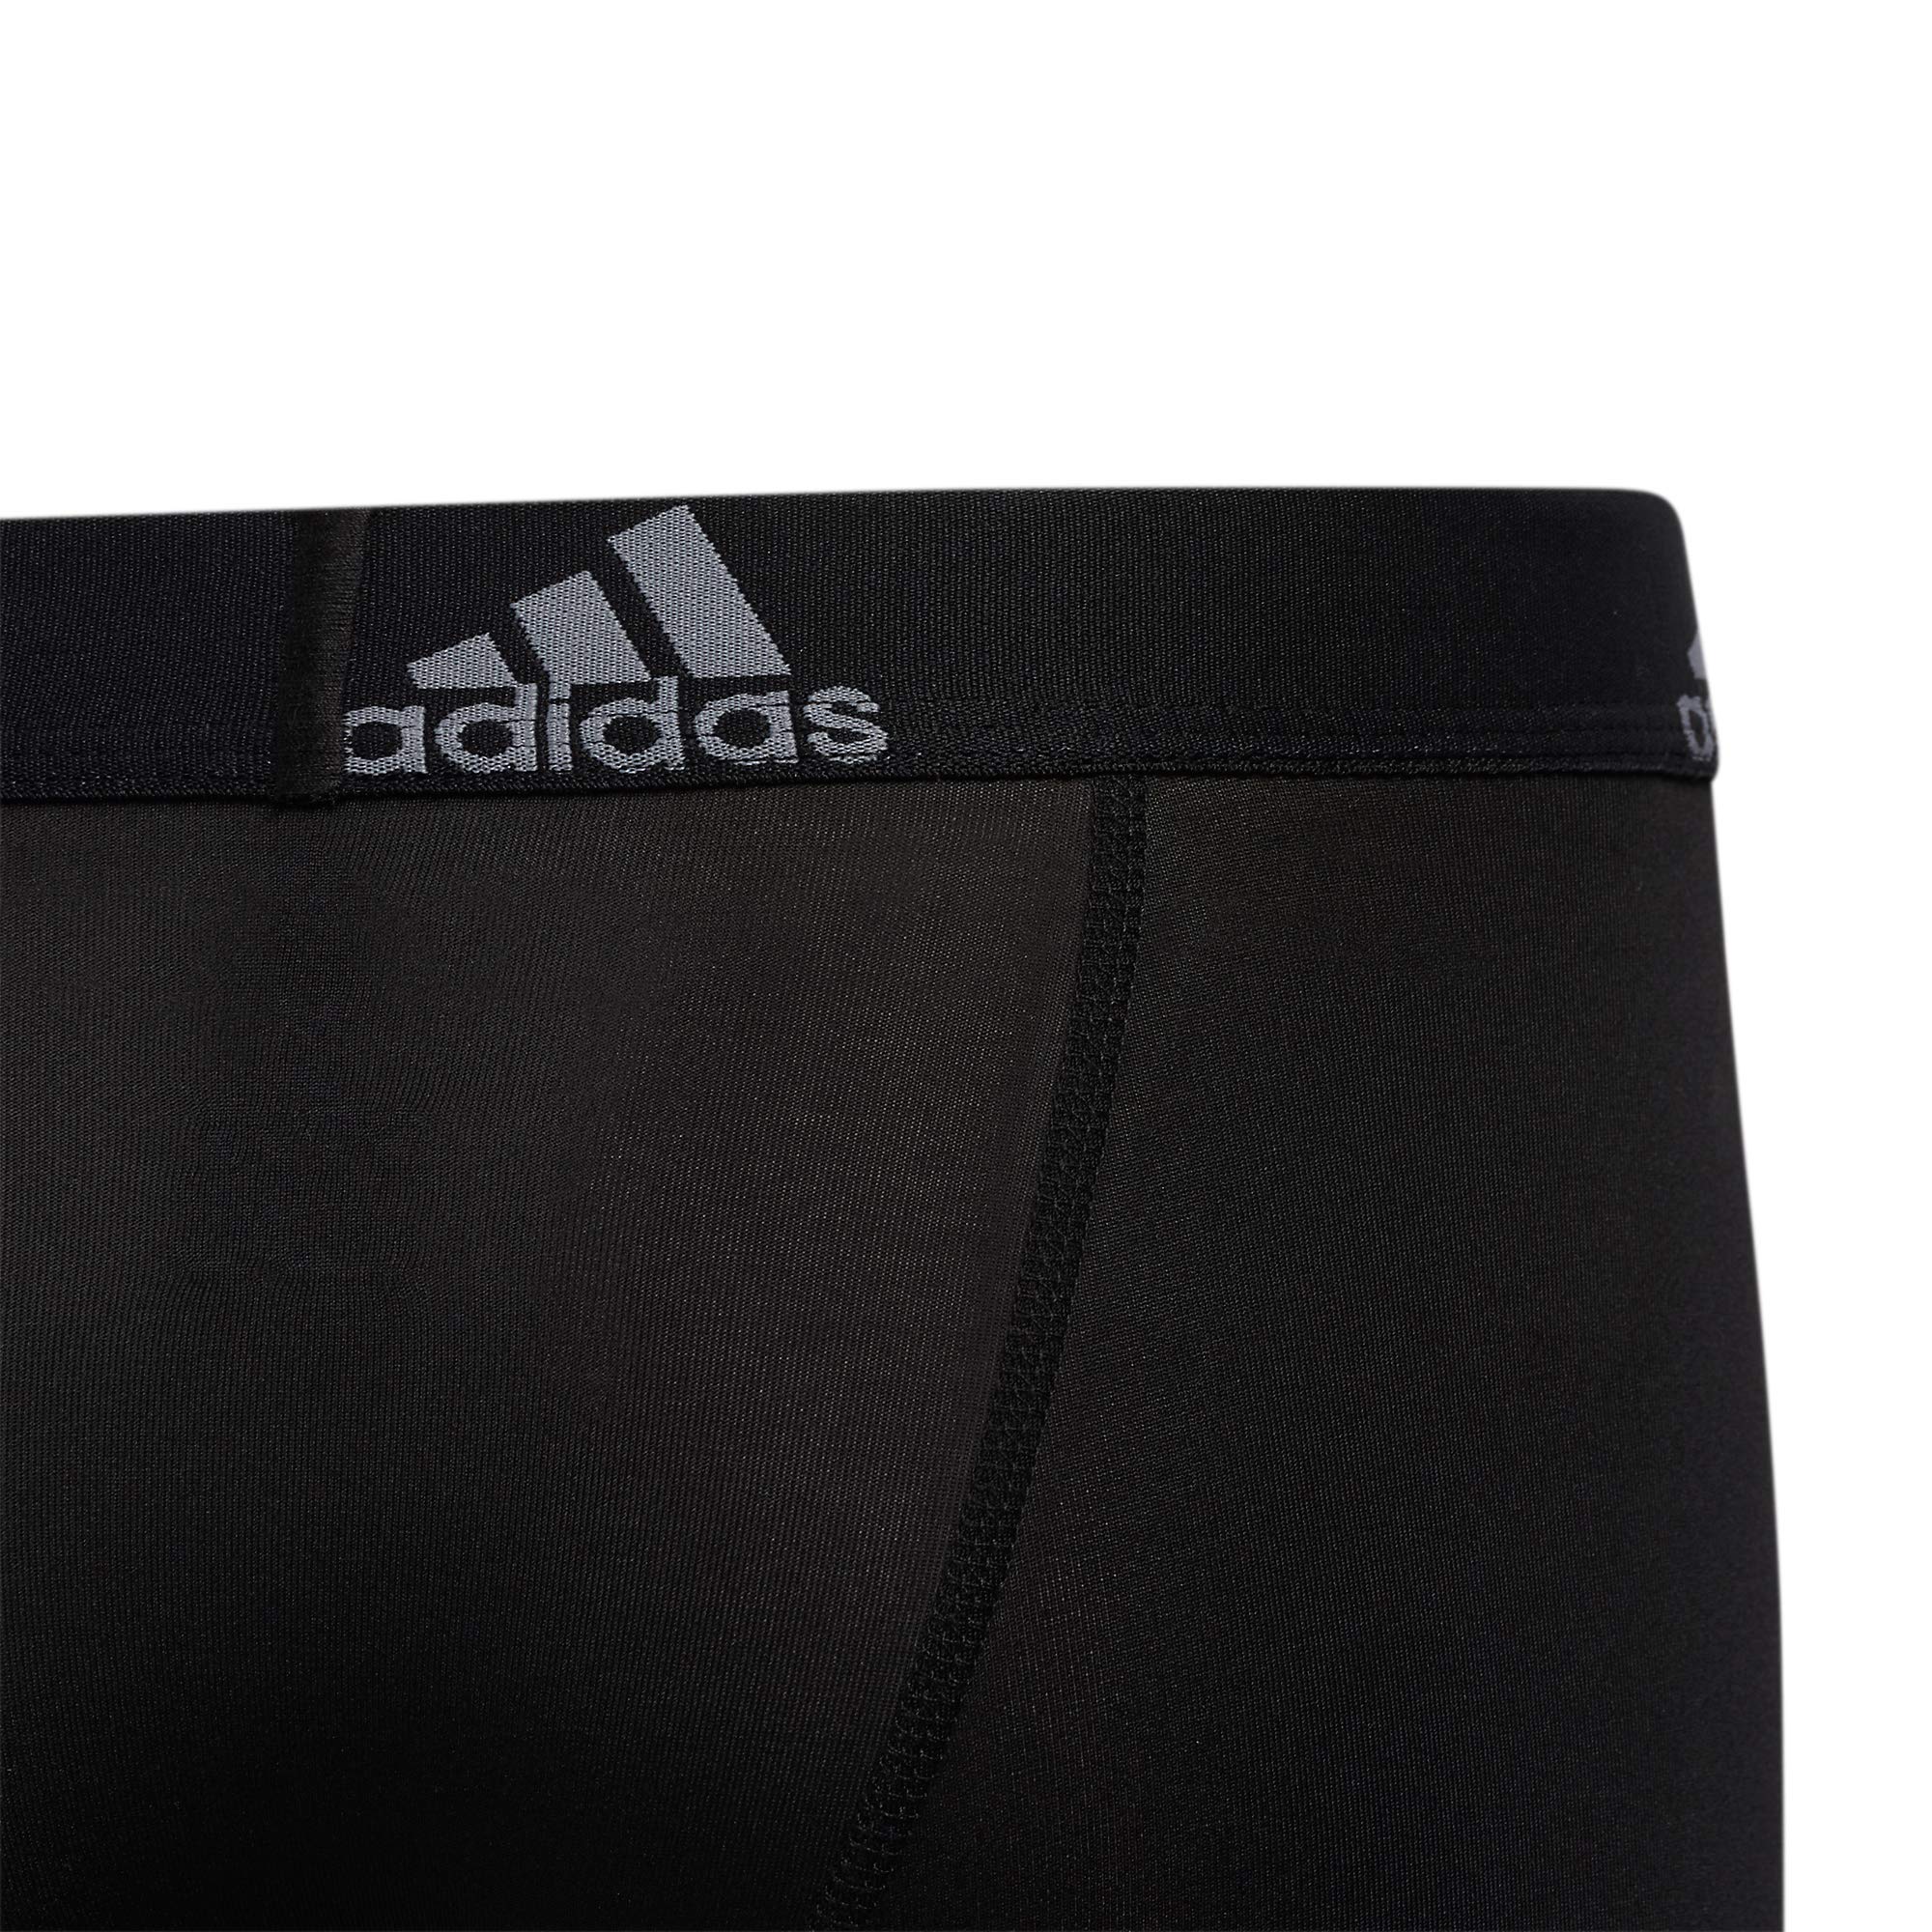 adidas Kids-Boy's Performance Boxer Briefs Underwear (4-Pack)